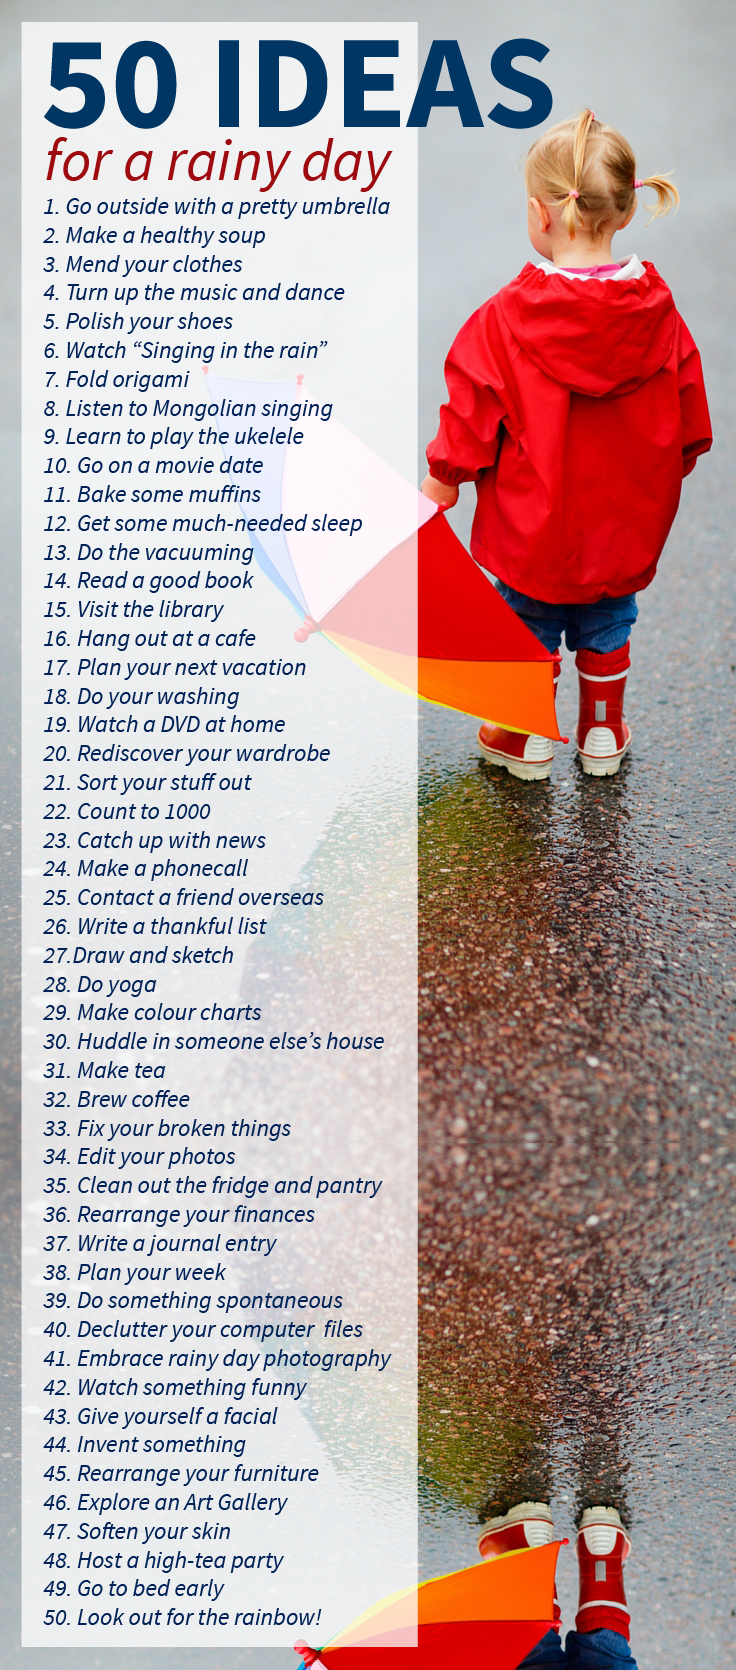 50 IDEAS for a rainy day list